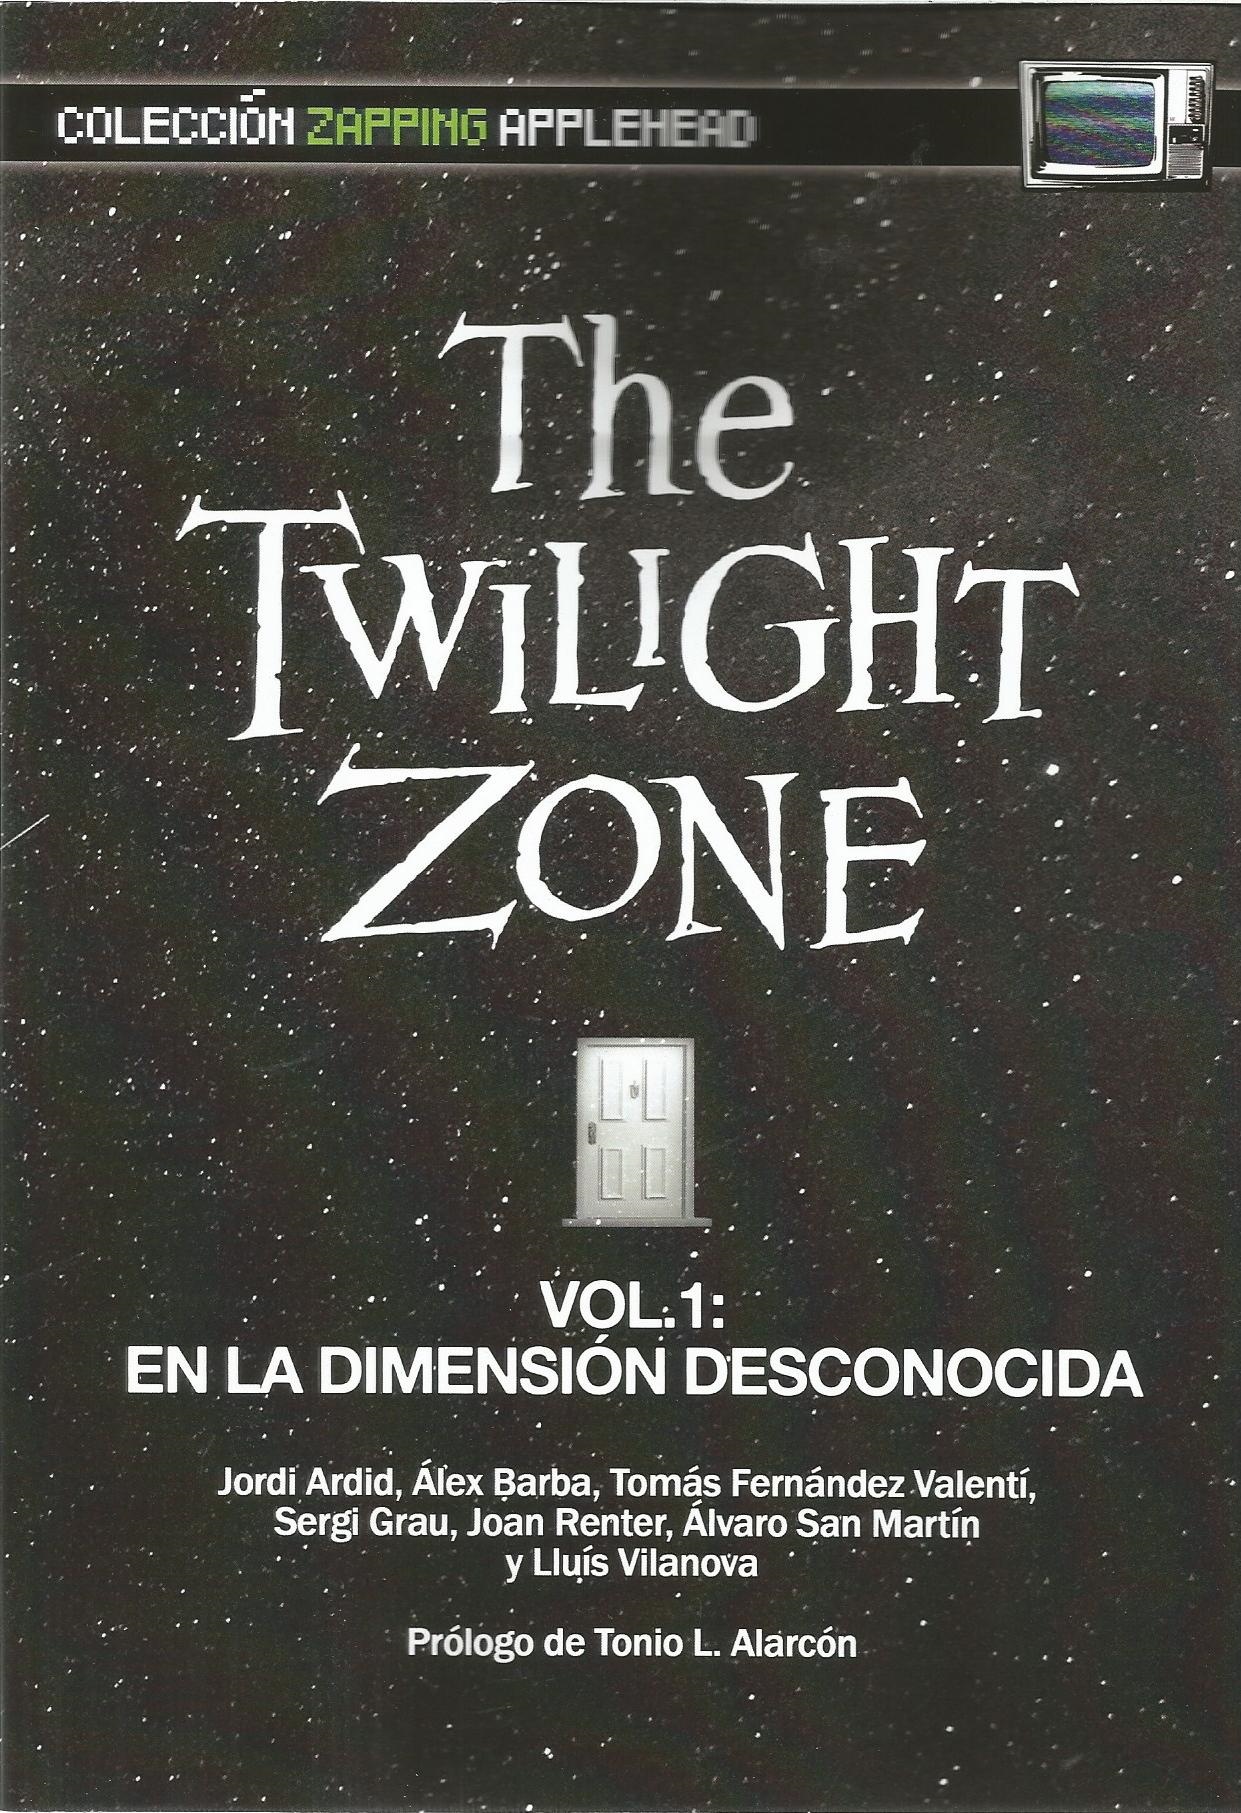 Twilight Zone vol 1. En la dimensión desconocida